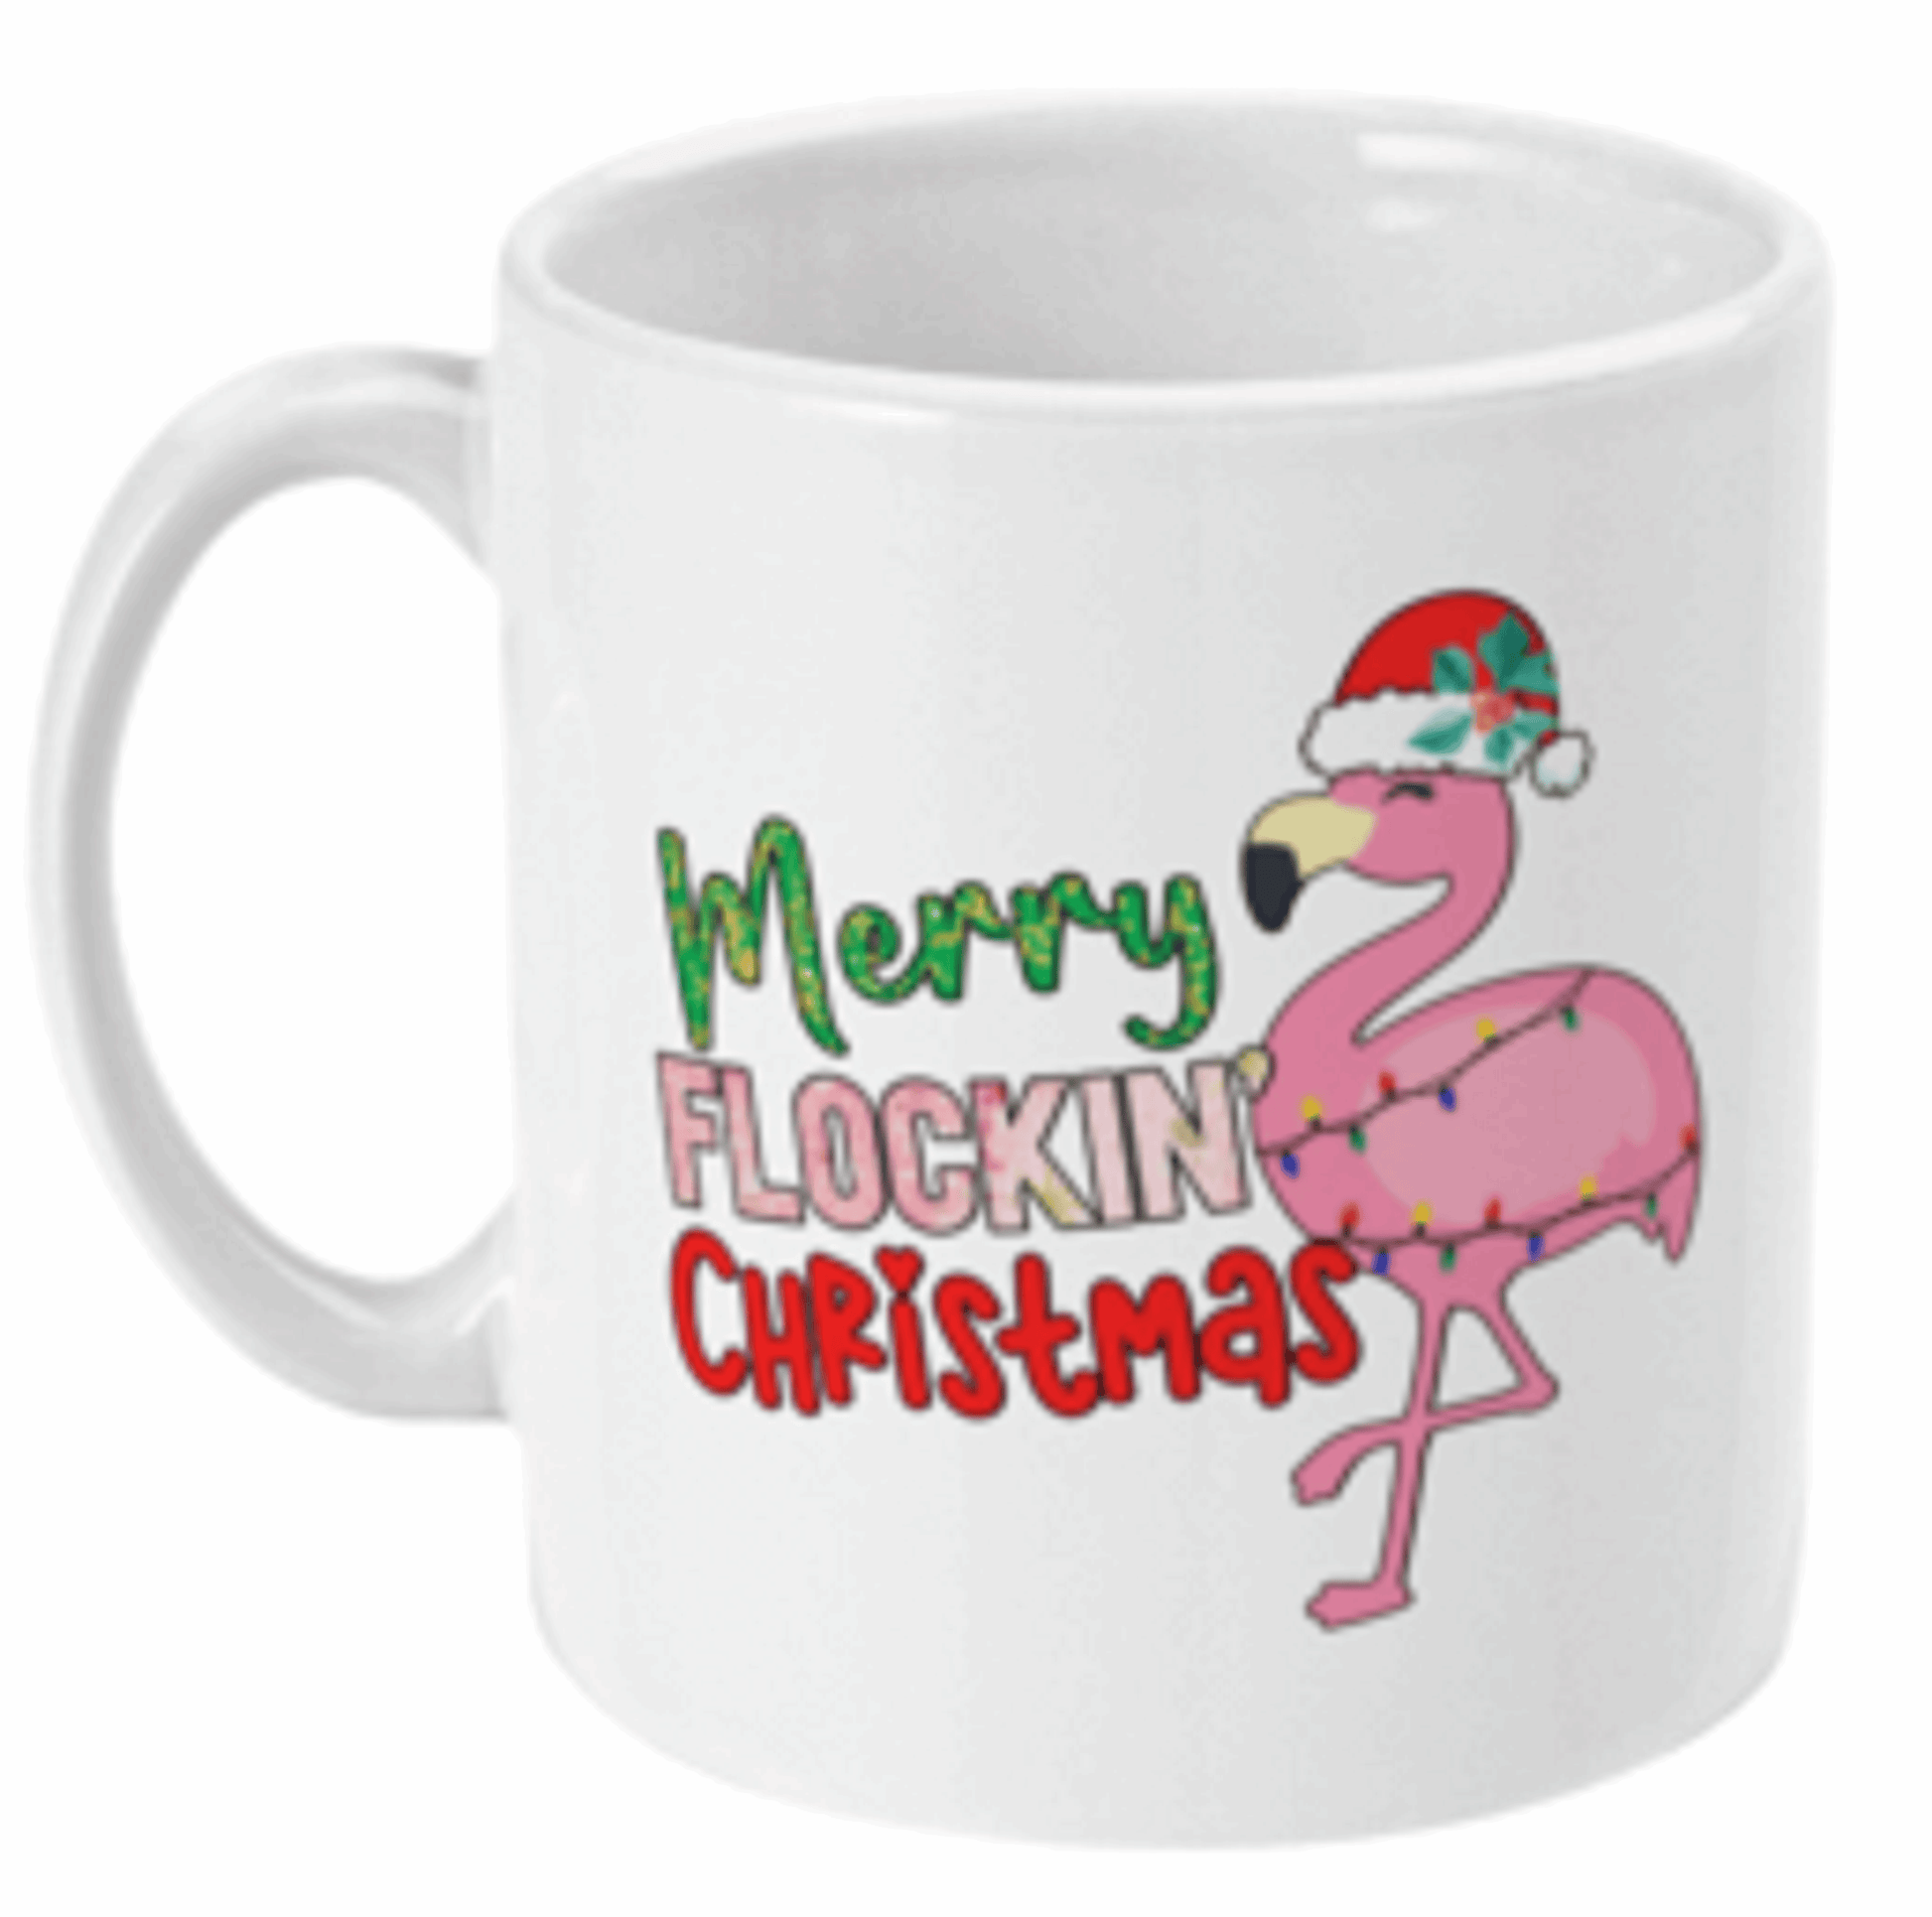  Merry Flocking Christmas Coffee Mug by Free Spirit Accessories sold by Free Spirit Accessories